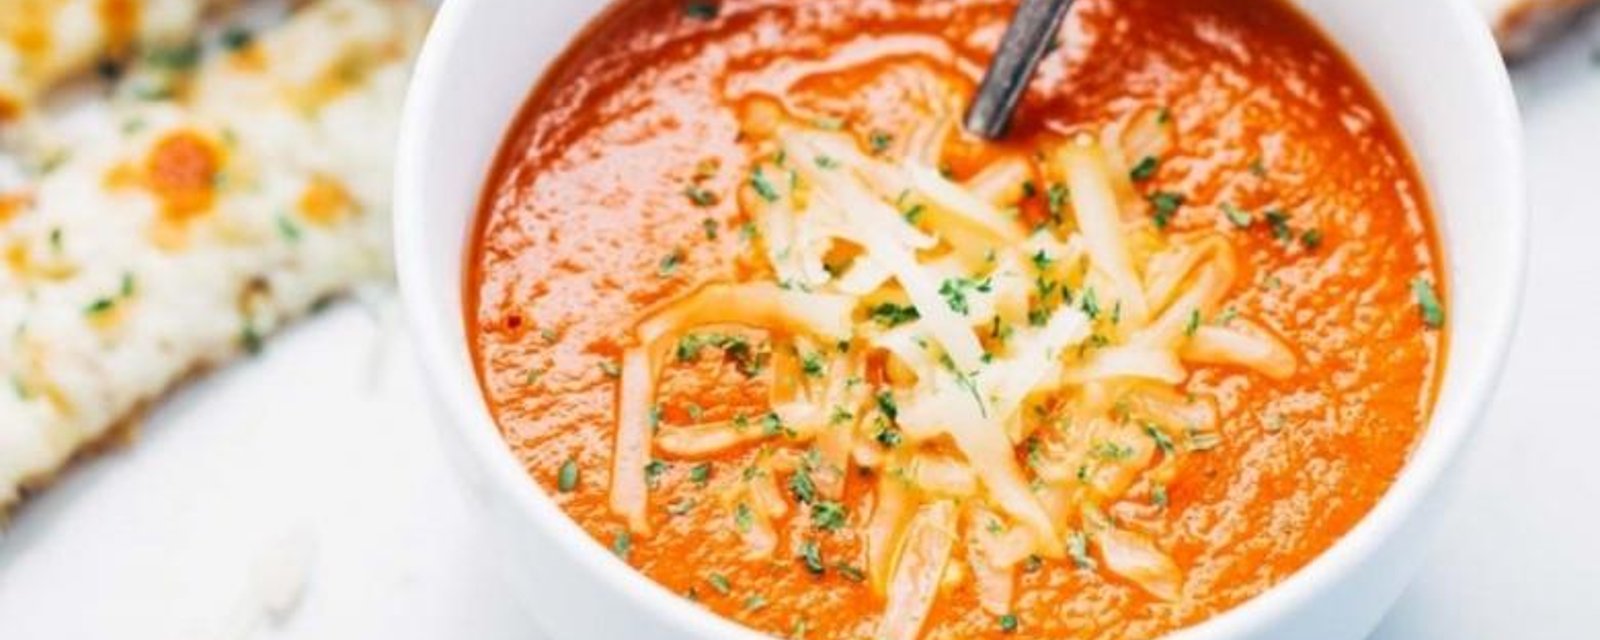 La soupe aux tomates maison... facile et délicieuse.